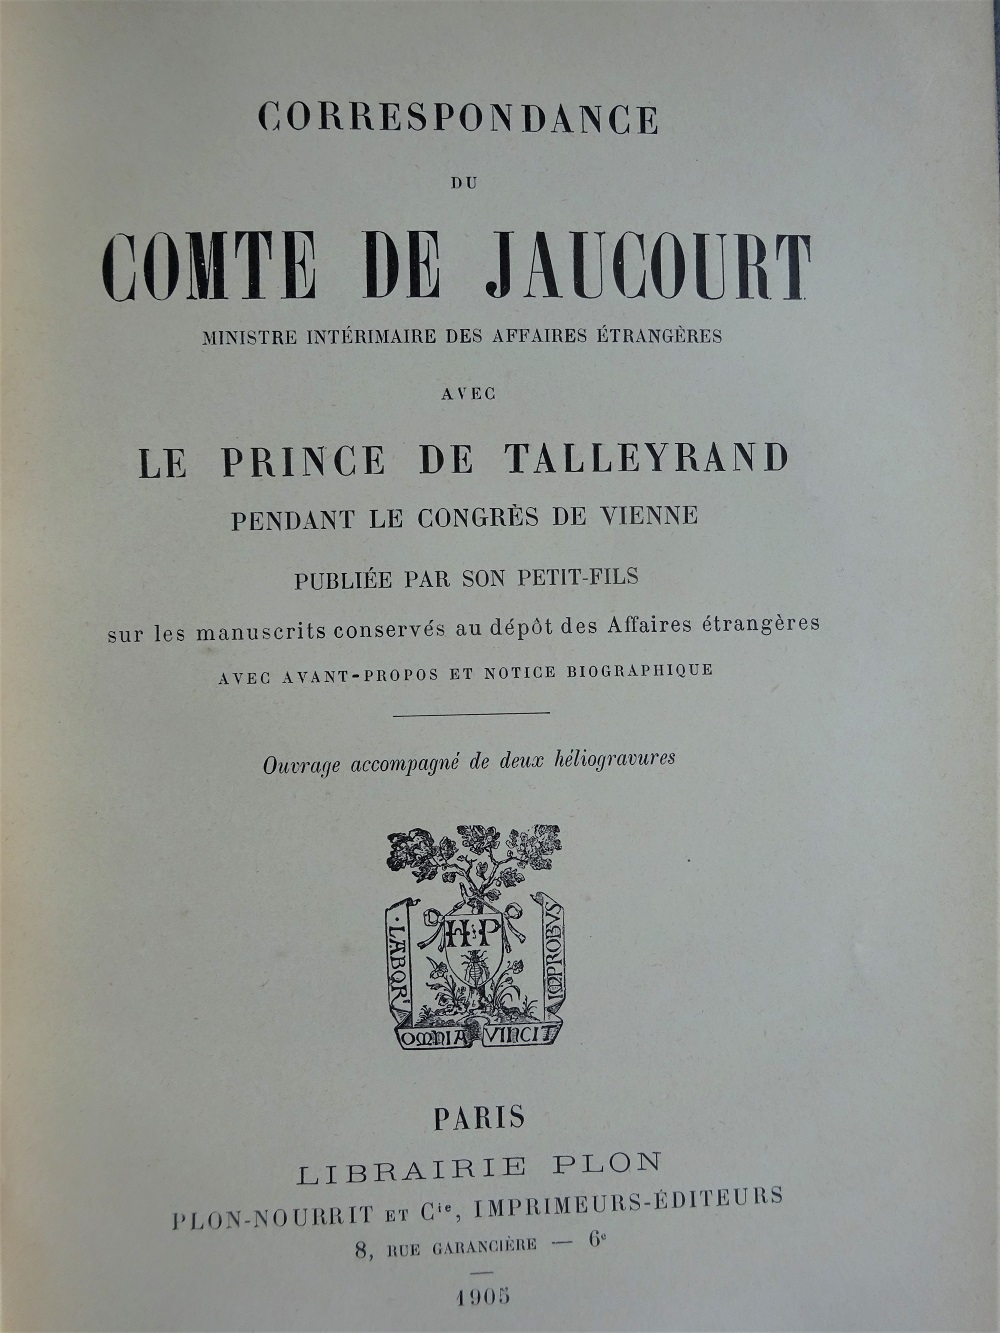 Correspondance du comte de Jaucourt avec le prince de Talleyrand pendant le congrès de Vienne